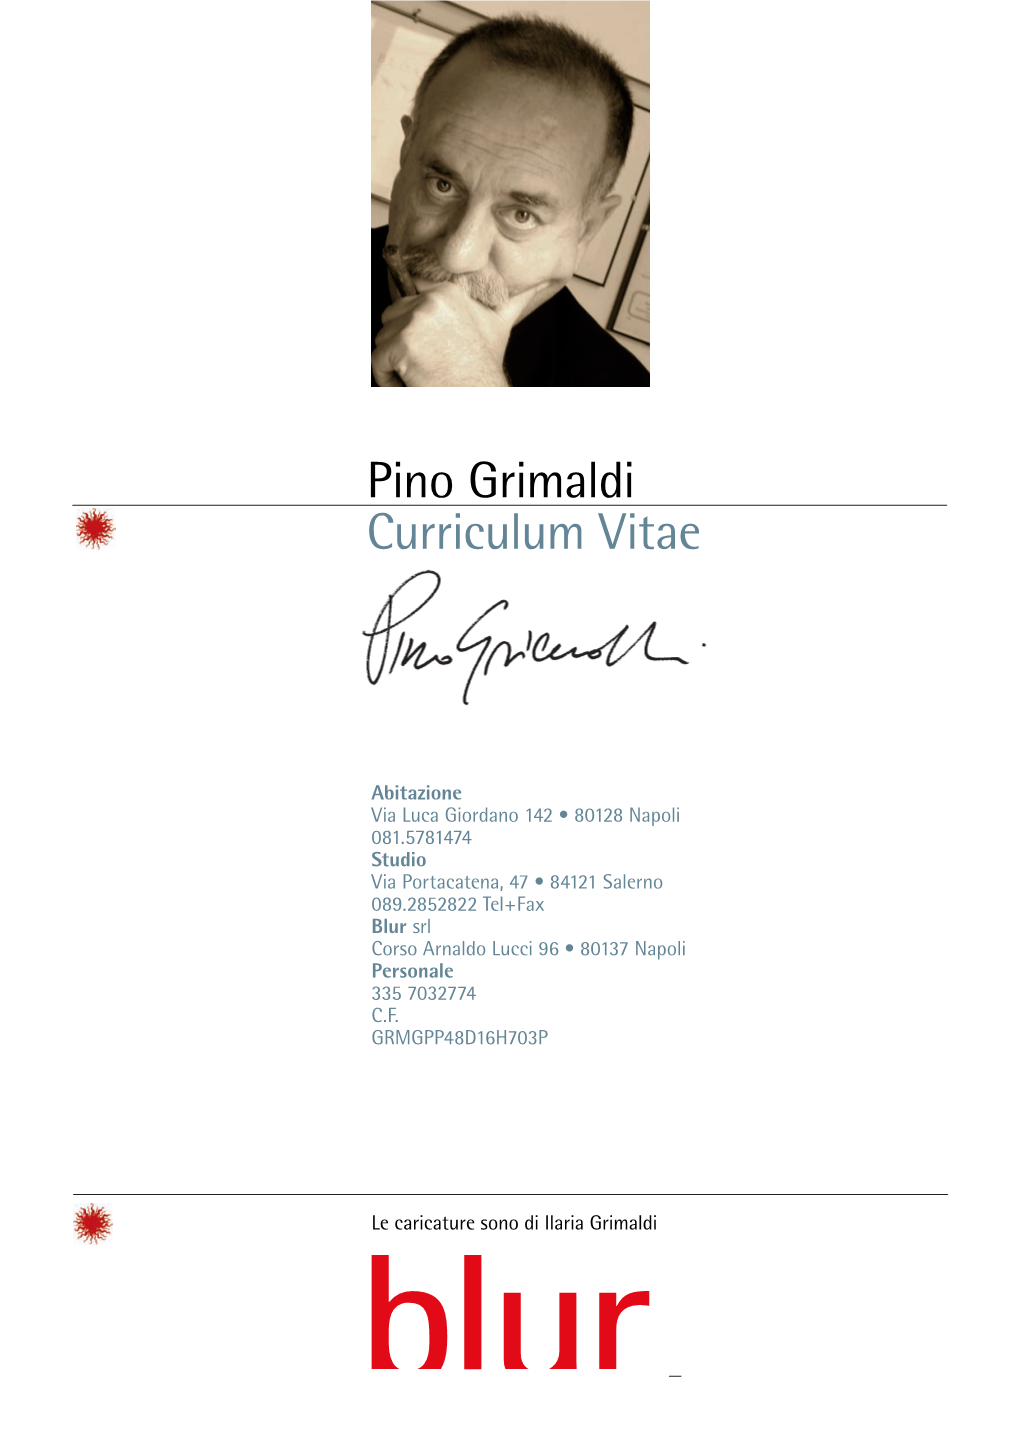 Pino Grimaldi Curriculum Vitae